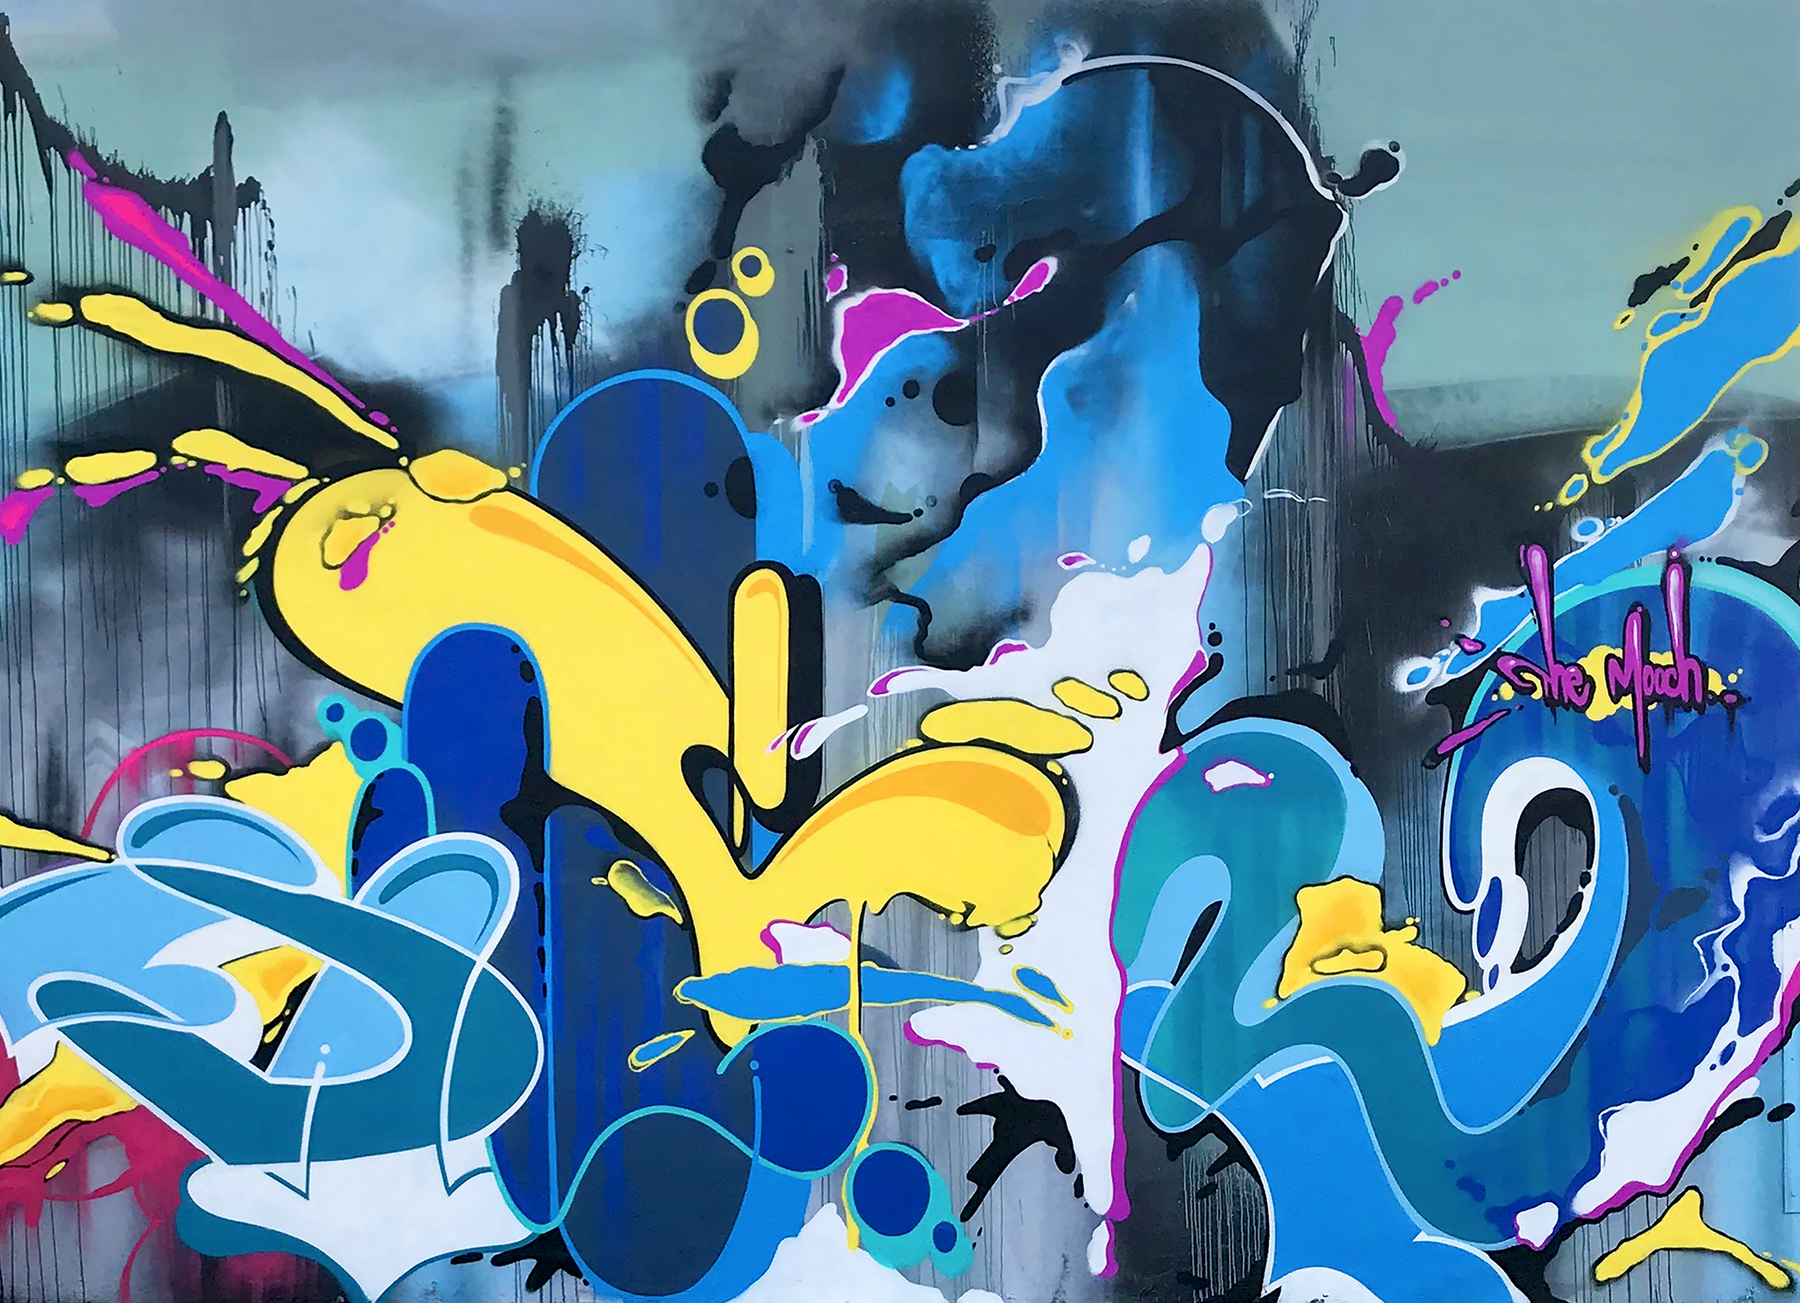 Big Kid's NYC Graffiti - Limited Edition Patterns - APX by CROSSKIX - Sportsman Gear